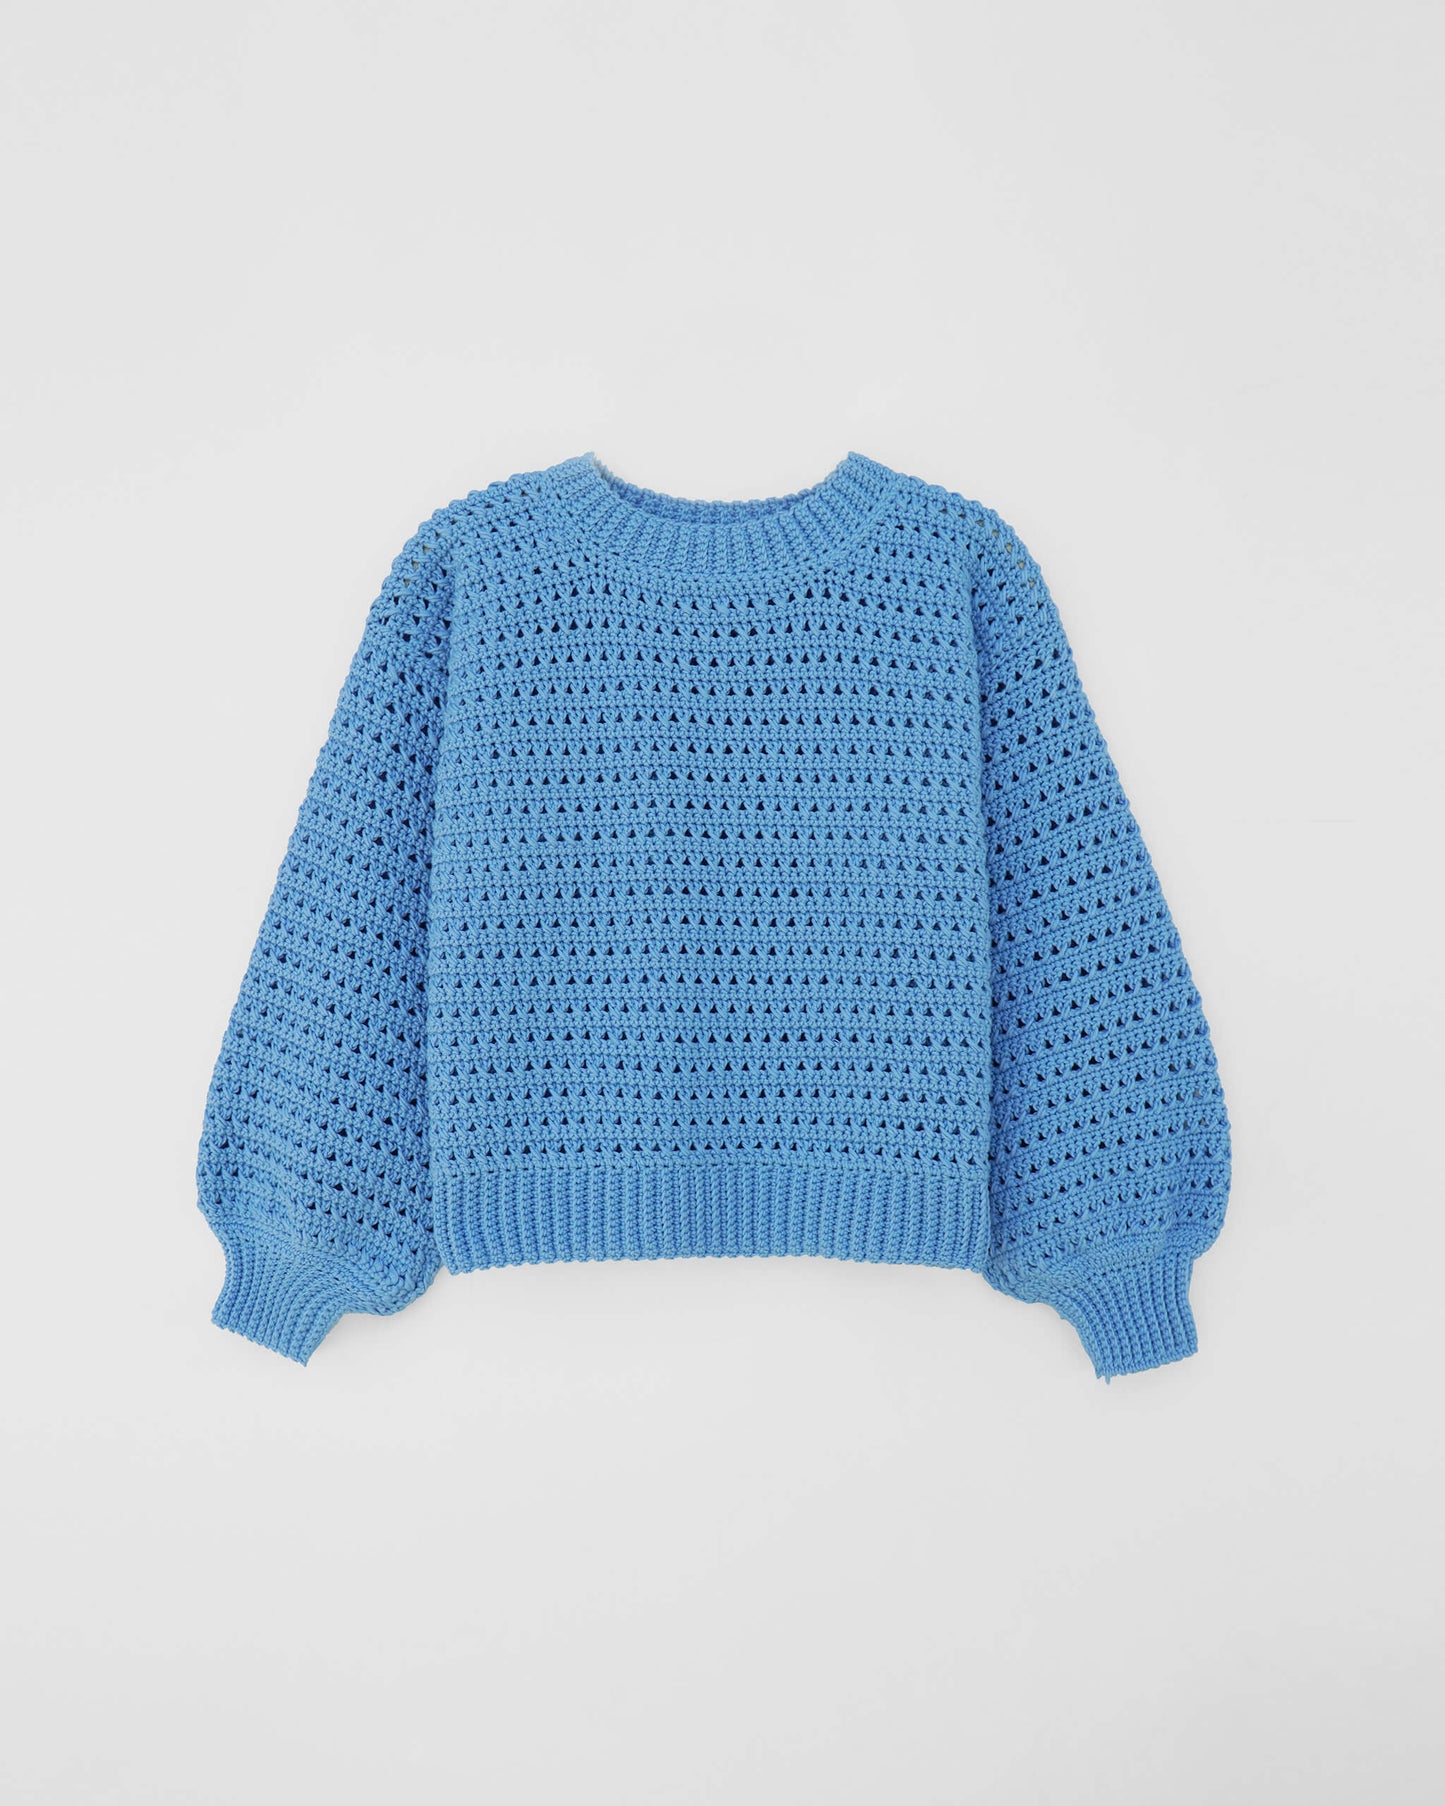 Easy crochet pattern